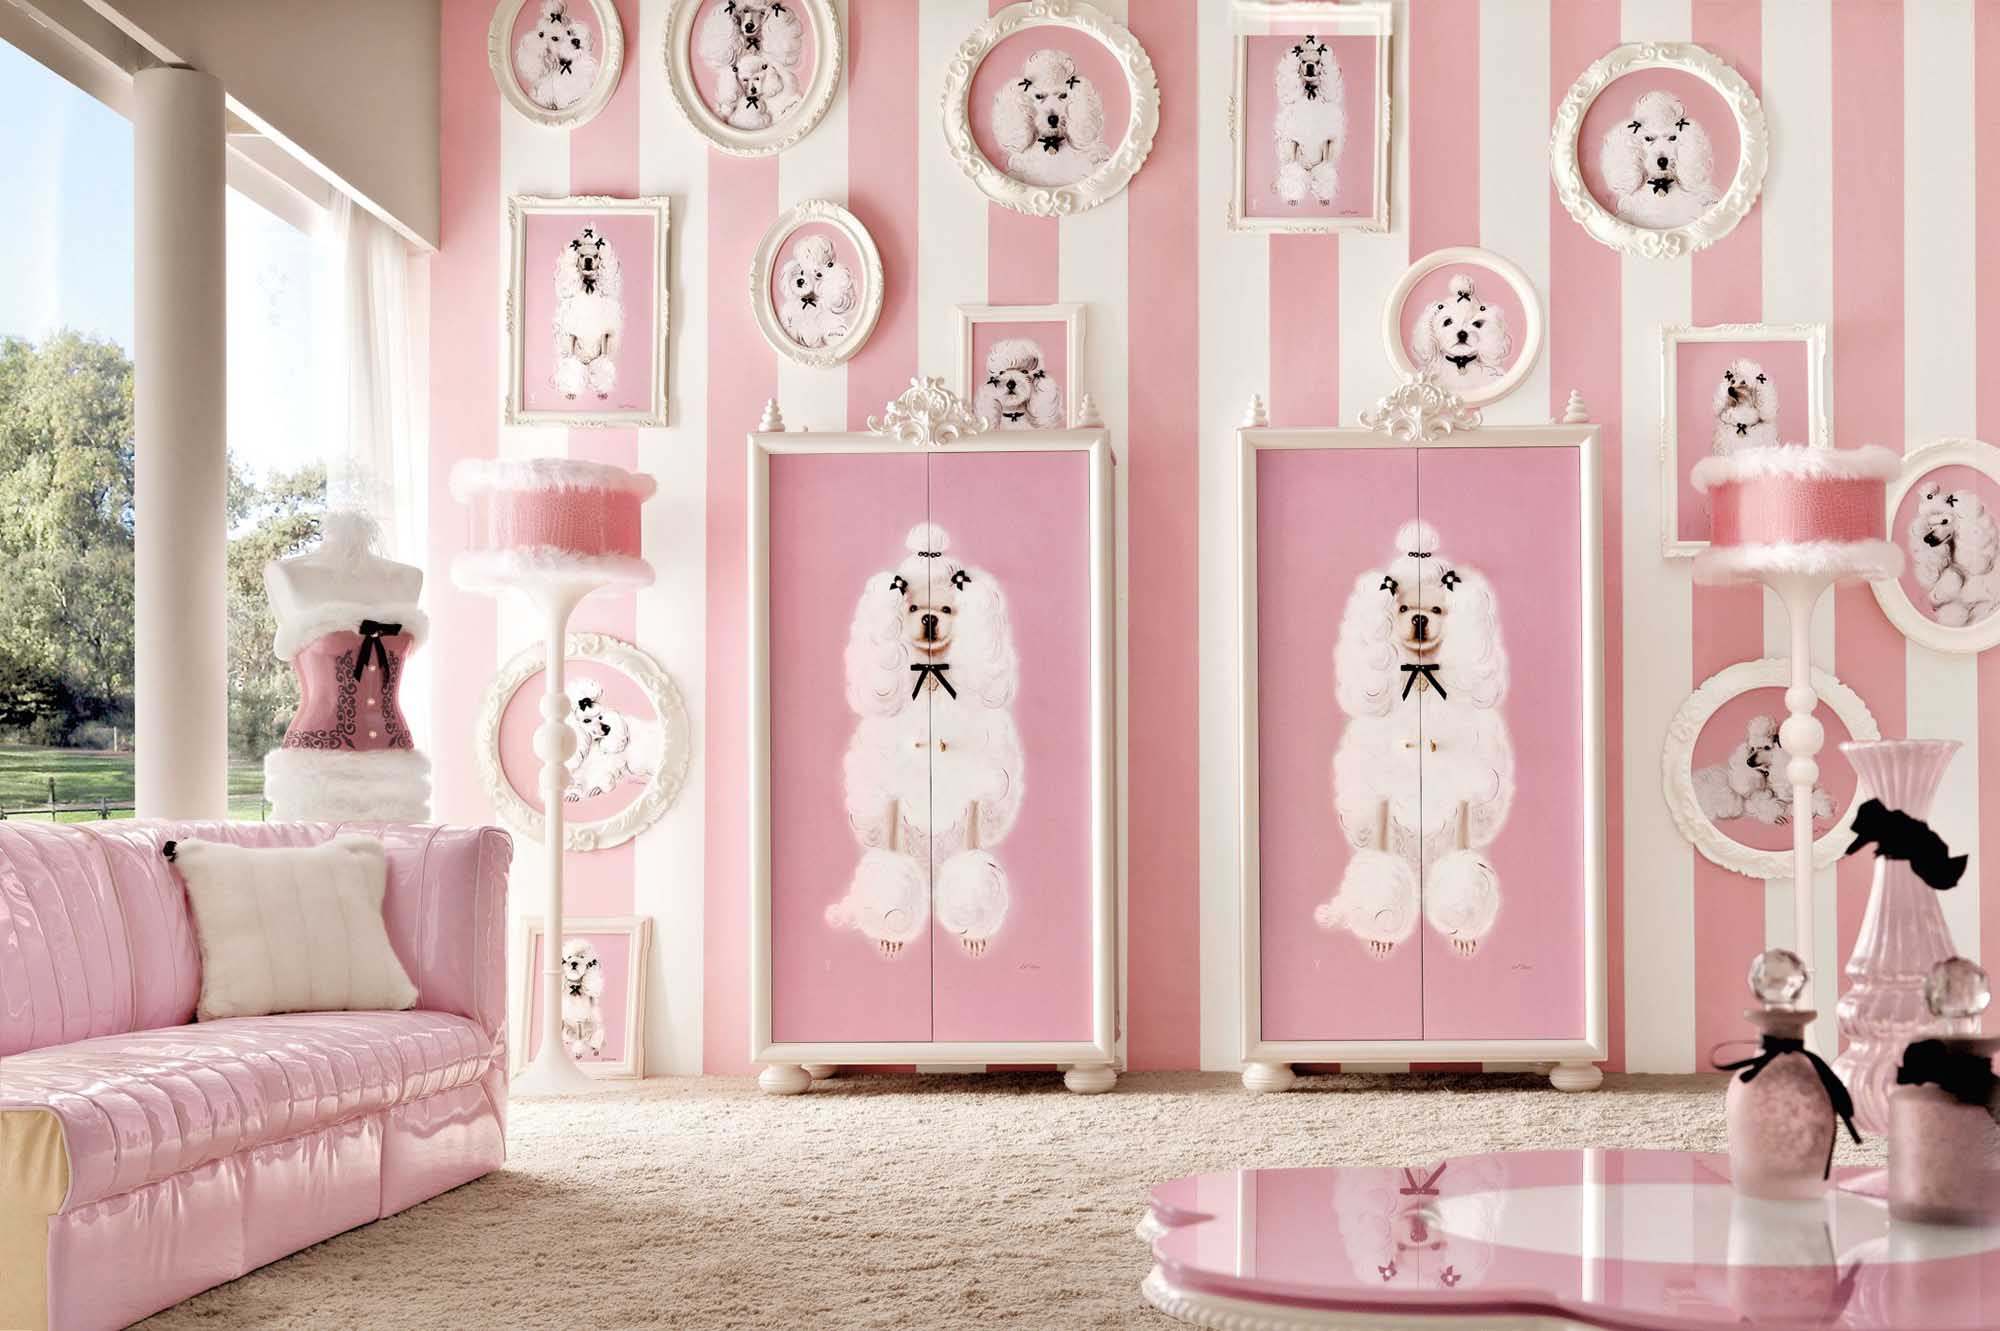 Бело-розовая мебель и декор в детской